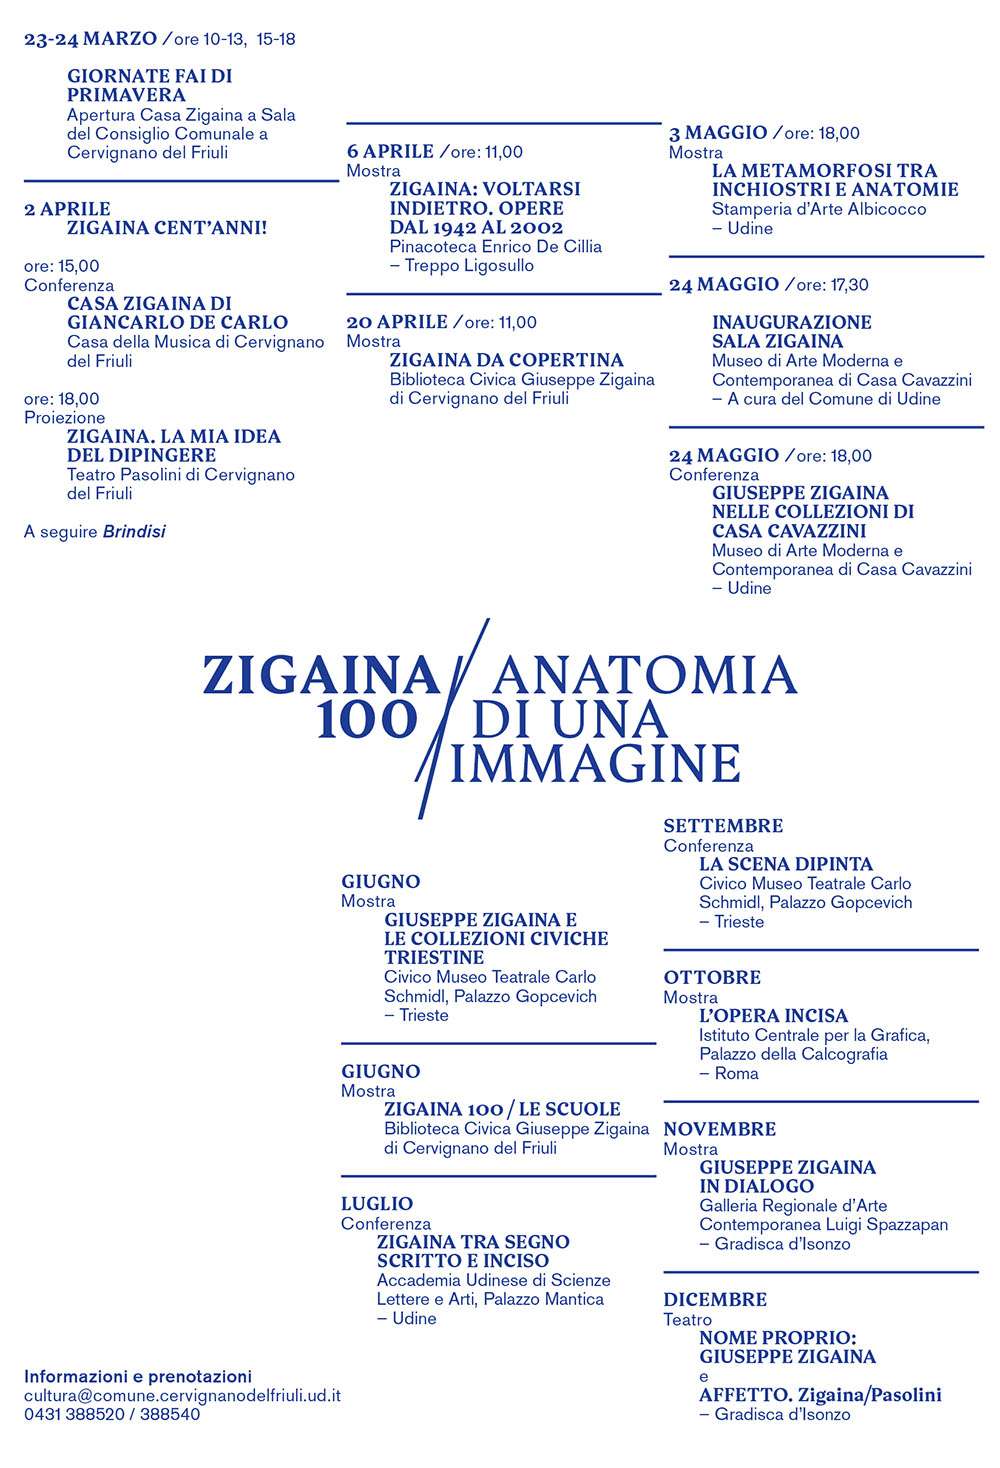 Il programma di Zigaina 100